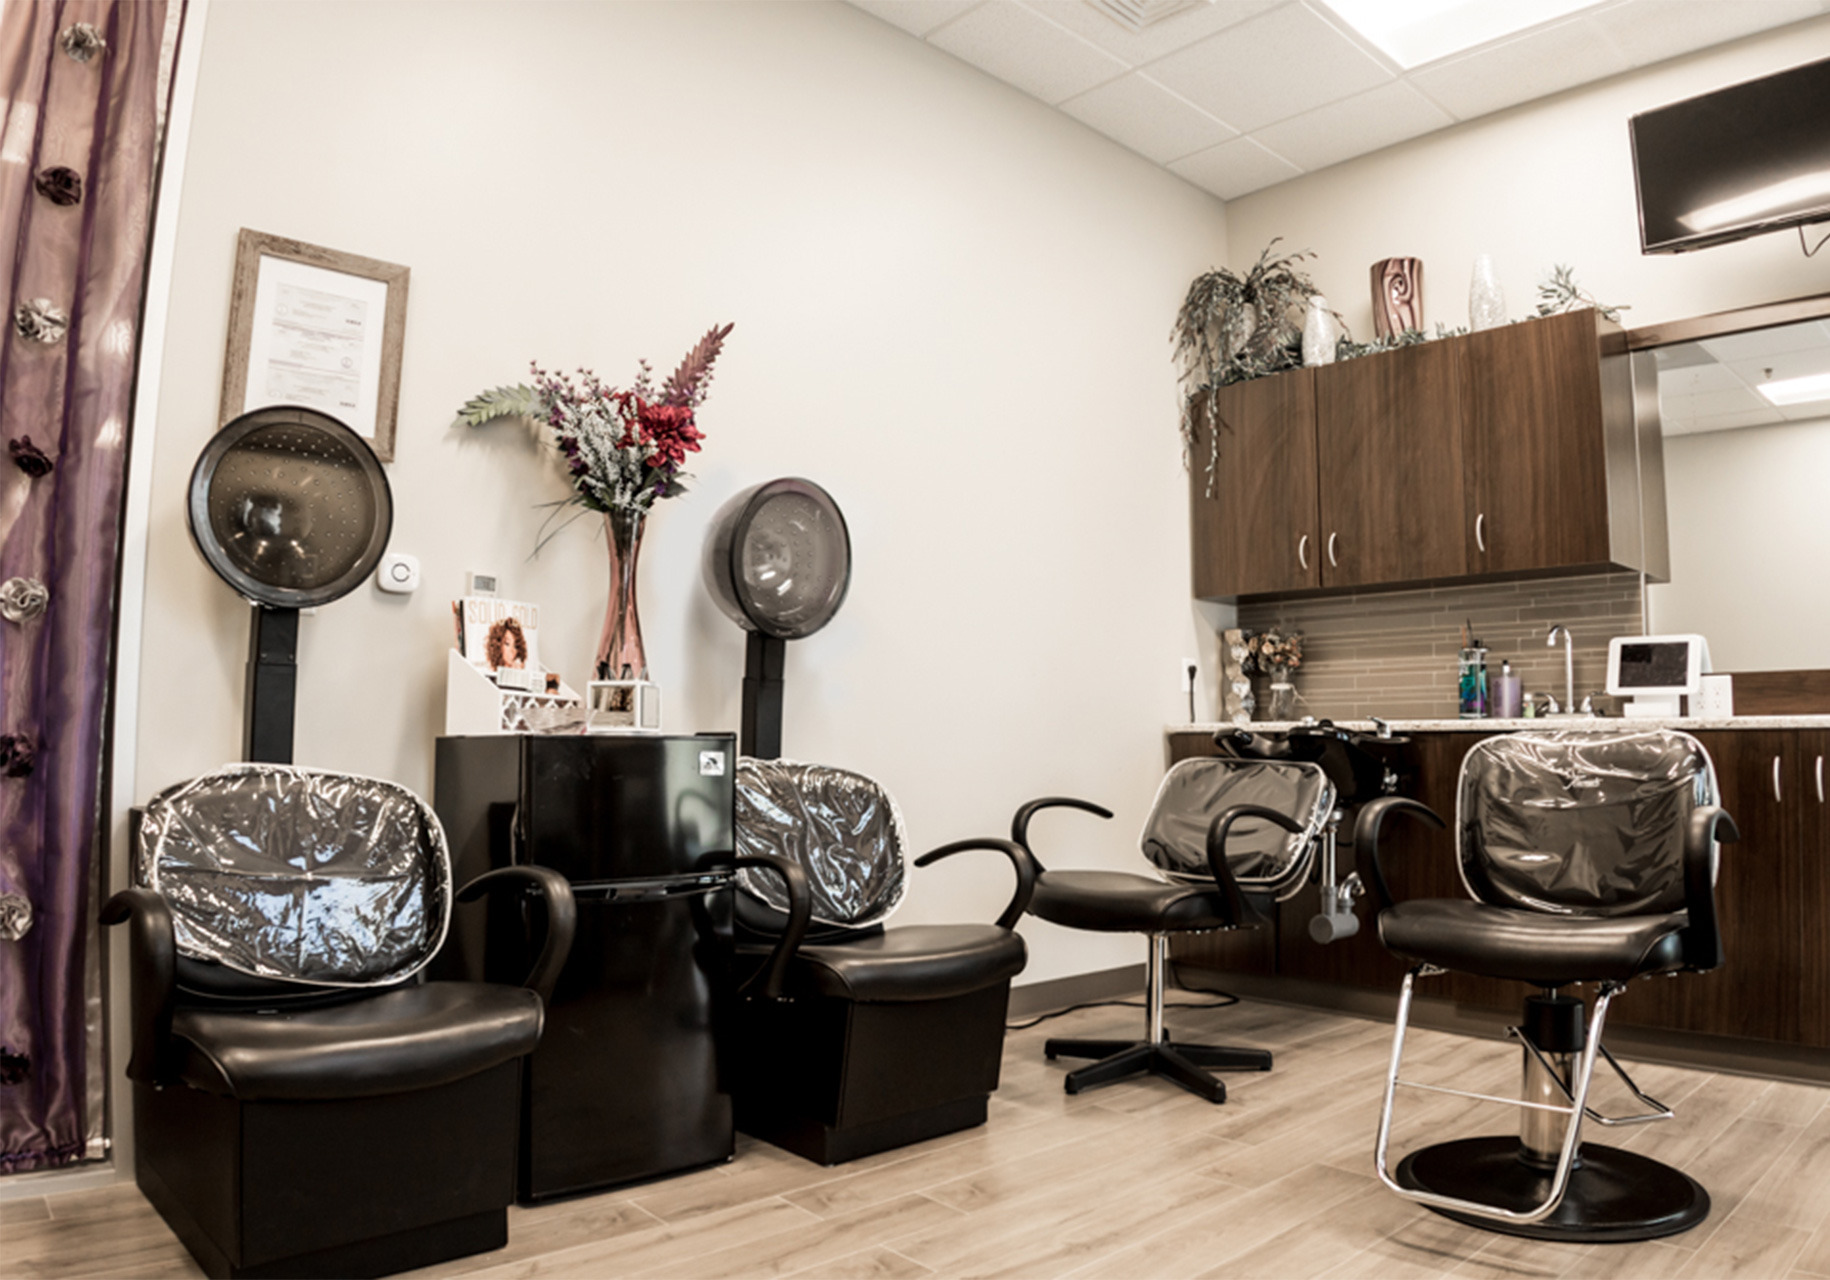 Salon Plaza | Salon Suites for Salon Professionals